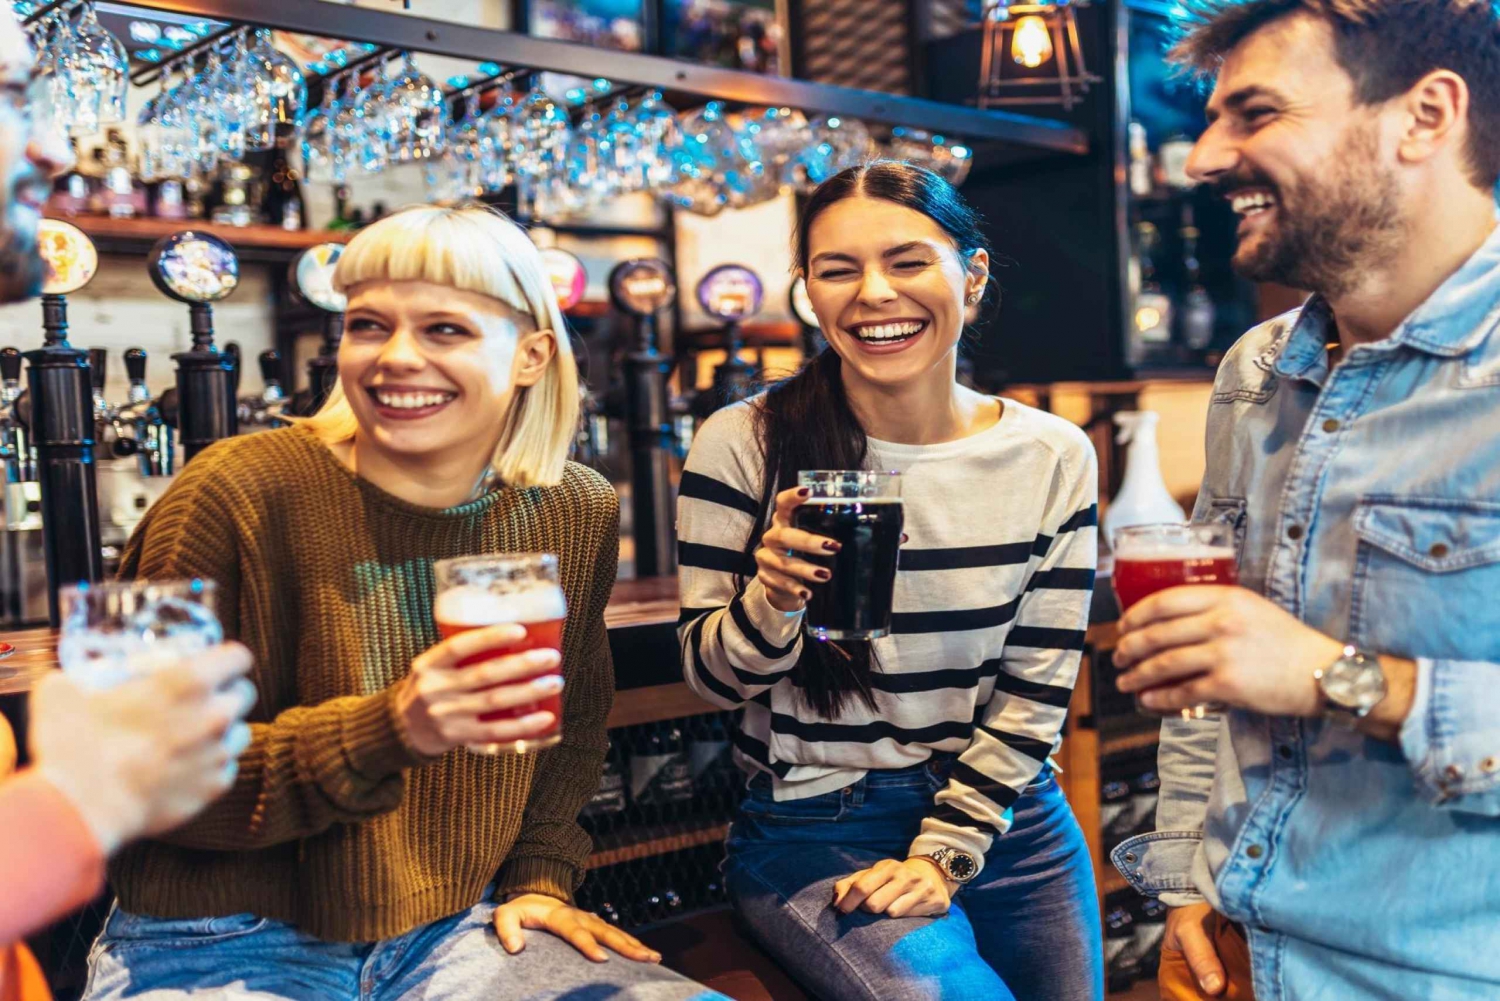 Ruotsalainen oluenmaistelukierros Tukholman vanhankaupungin pubeissa